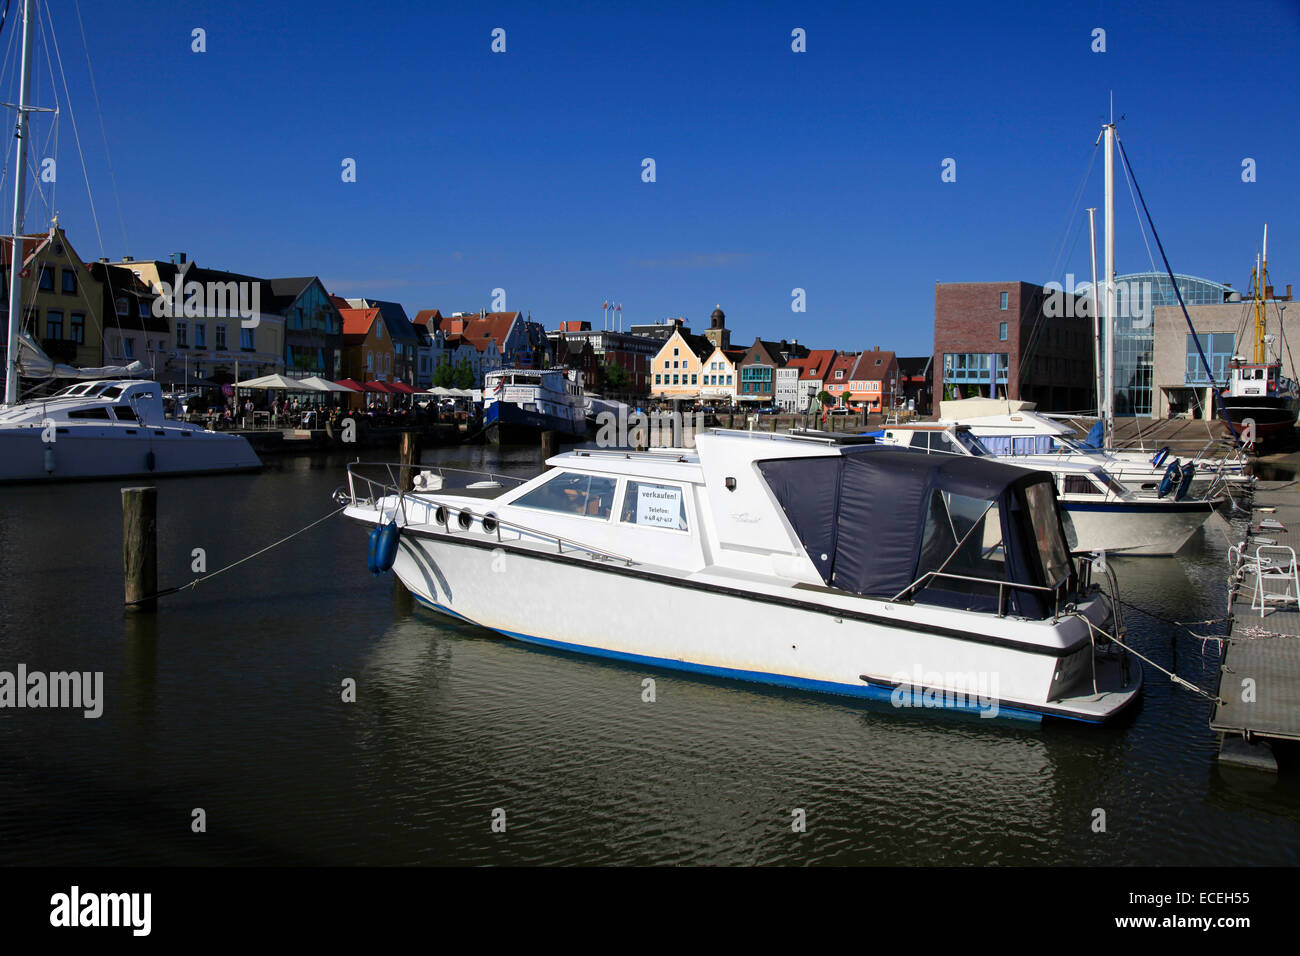 Le port intérieur de Husum. C'est la capital de la région de Frise du Nord du Schleswig-Holstein. Husum est situé sur la côte de la mer du Nord. Photo : Klaus Nowottnick Date : 27 mai 2012 Banque D'Images